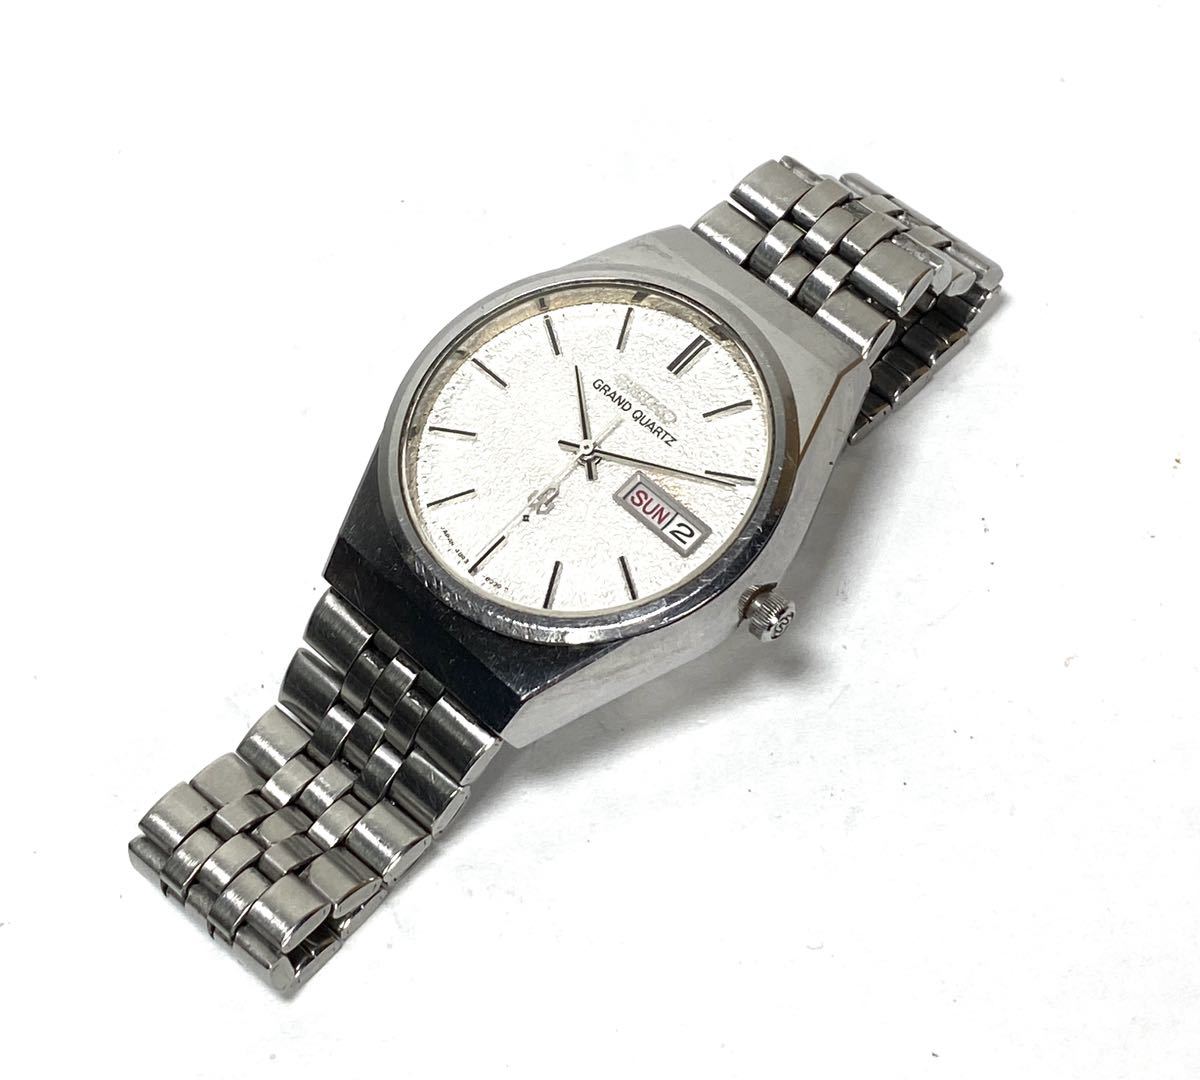 SEIKO セイコー グランドクォーツ 4843-8050 腕時計 - 腕時計(アナログ)